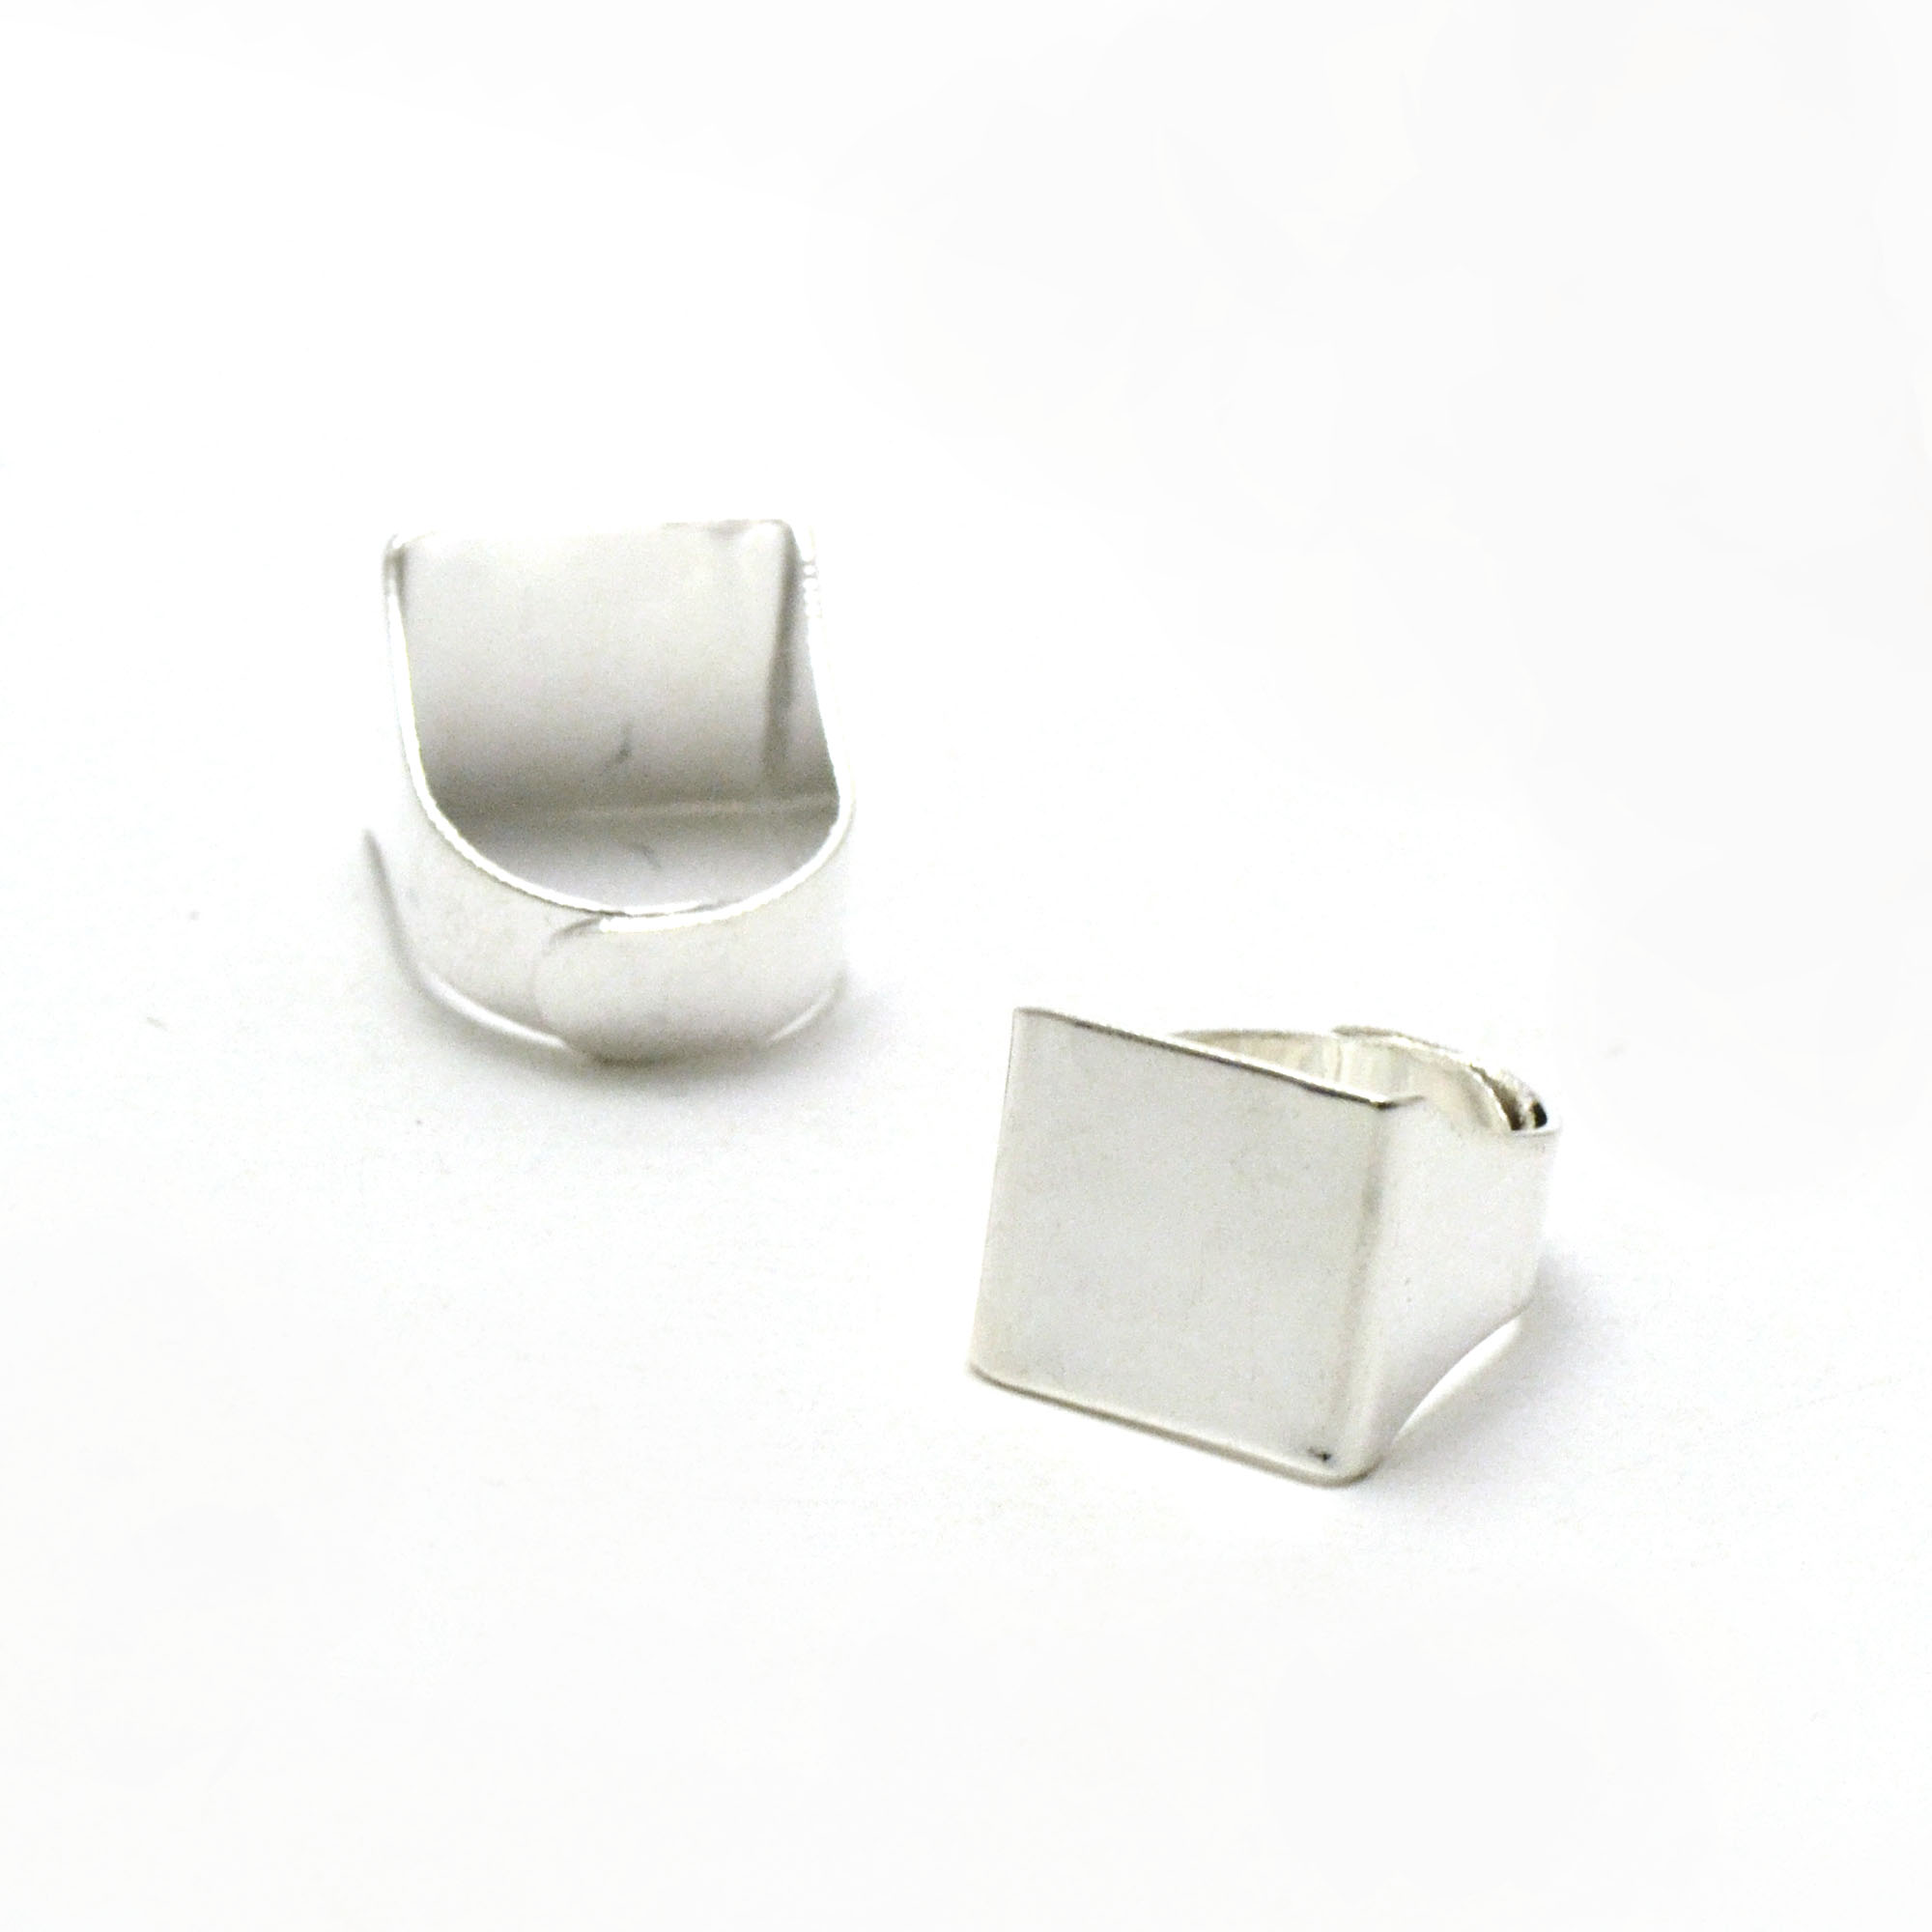 2 magnifiques supports bagues carrée 15x15 mm anneau réglable, argenté clair